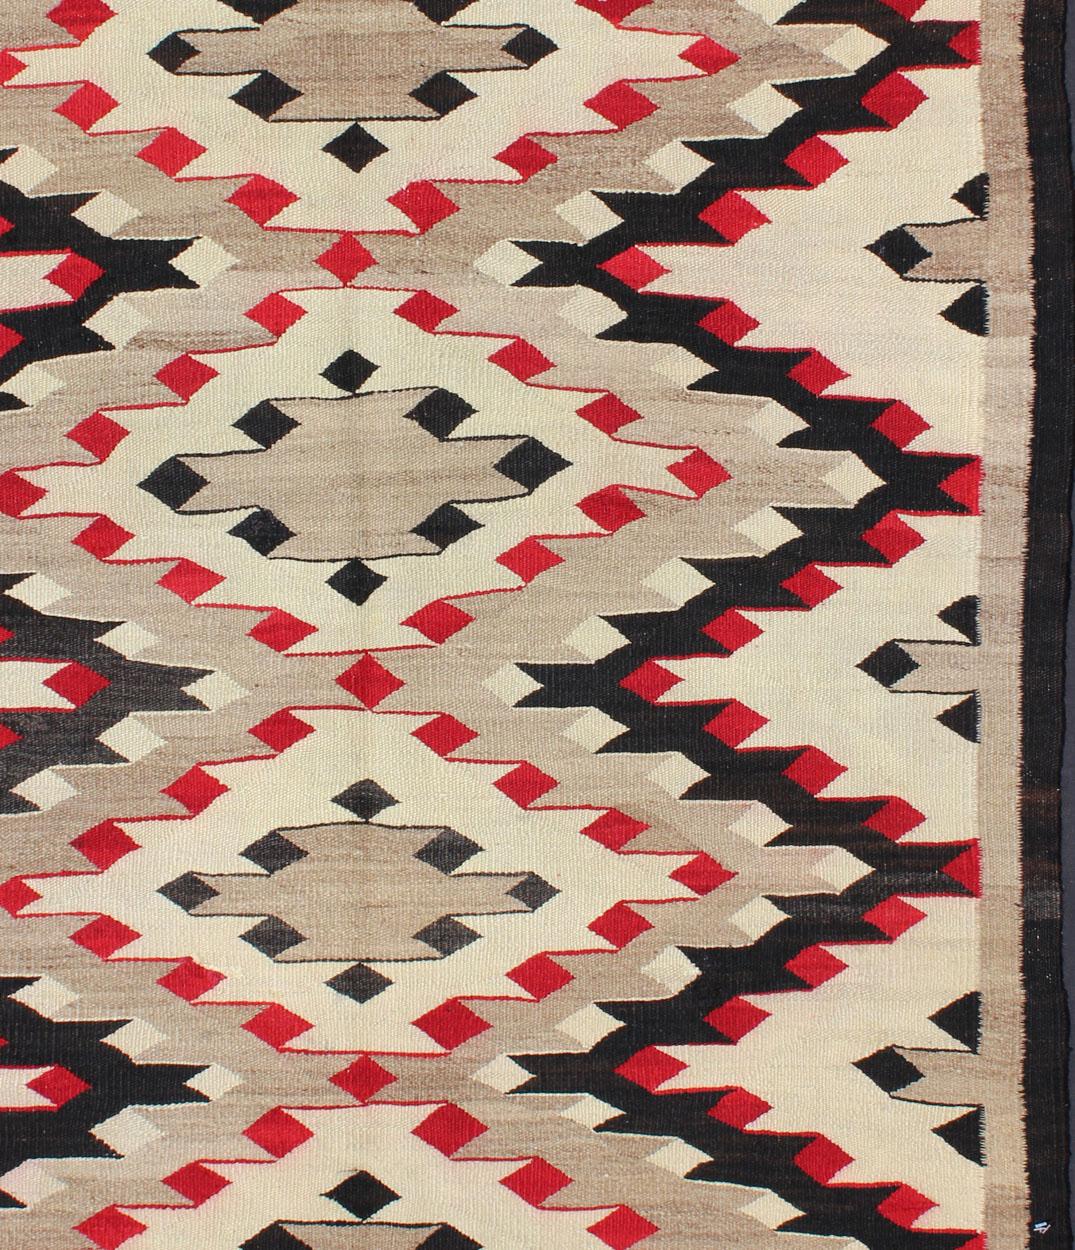 Cet intriguant tapis Navajo vintage a été tissé par les tribus Navajo durant la première moitié du 20e siècle. Cette composition unique et passionnante présente une composition géométrique captivante avec un motif de médaillon diamanté sur toute la